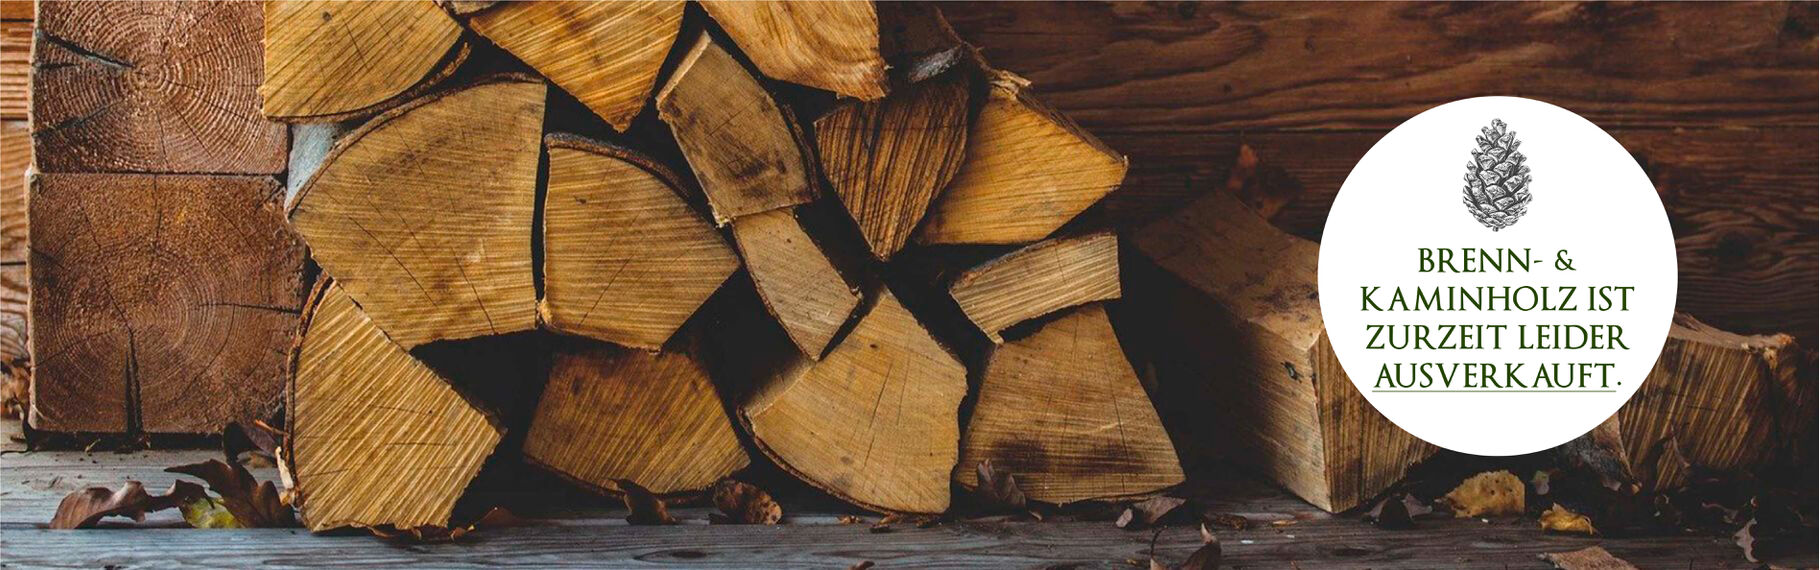 Fertig geschnitten Holz | Kaminholz